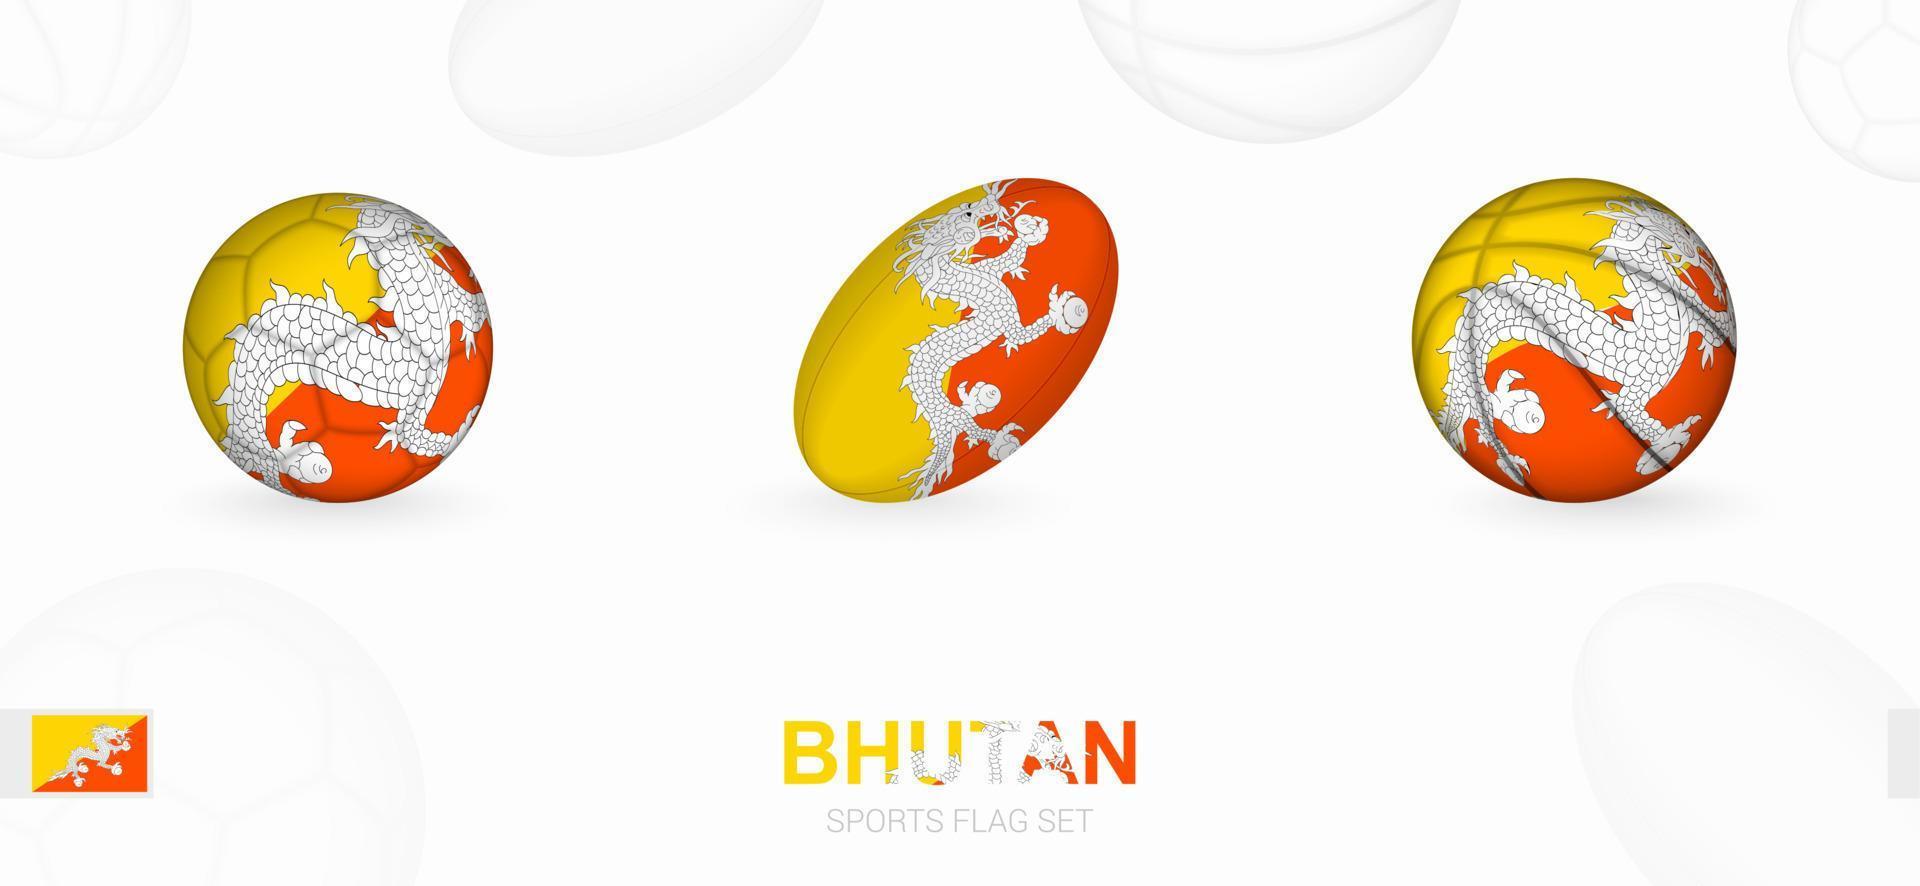 Sport Symbole zum Fußball, Rugby und Basketball mit das Flagge von bhutan. vektor